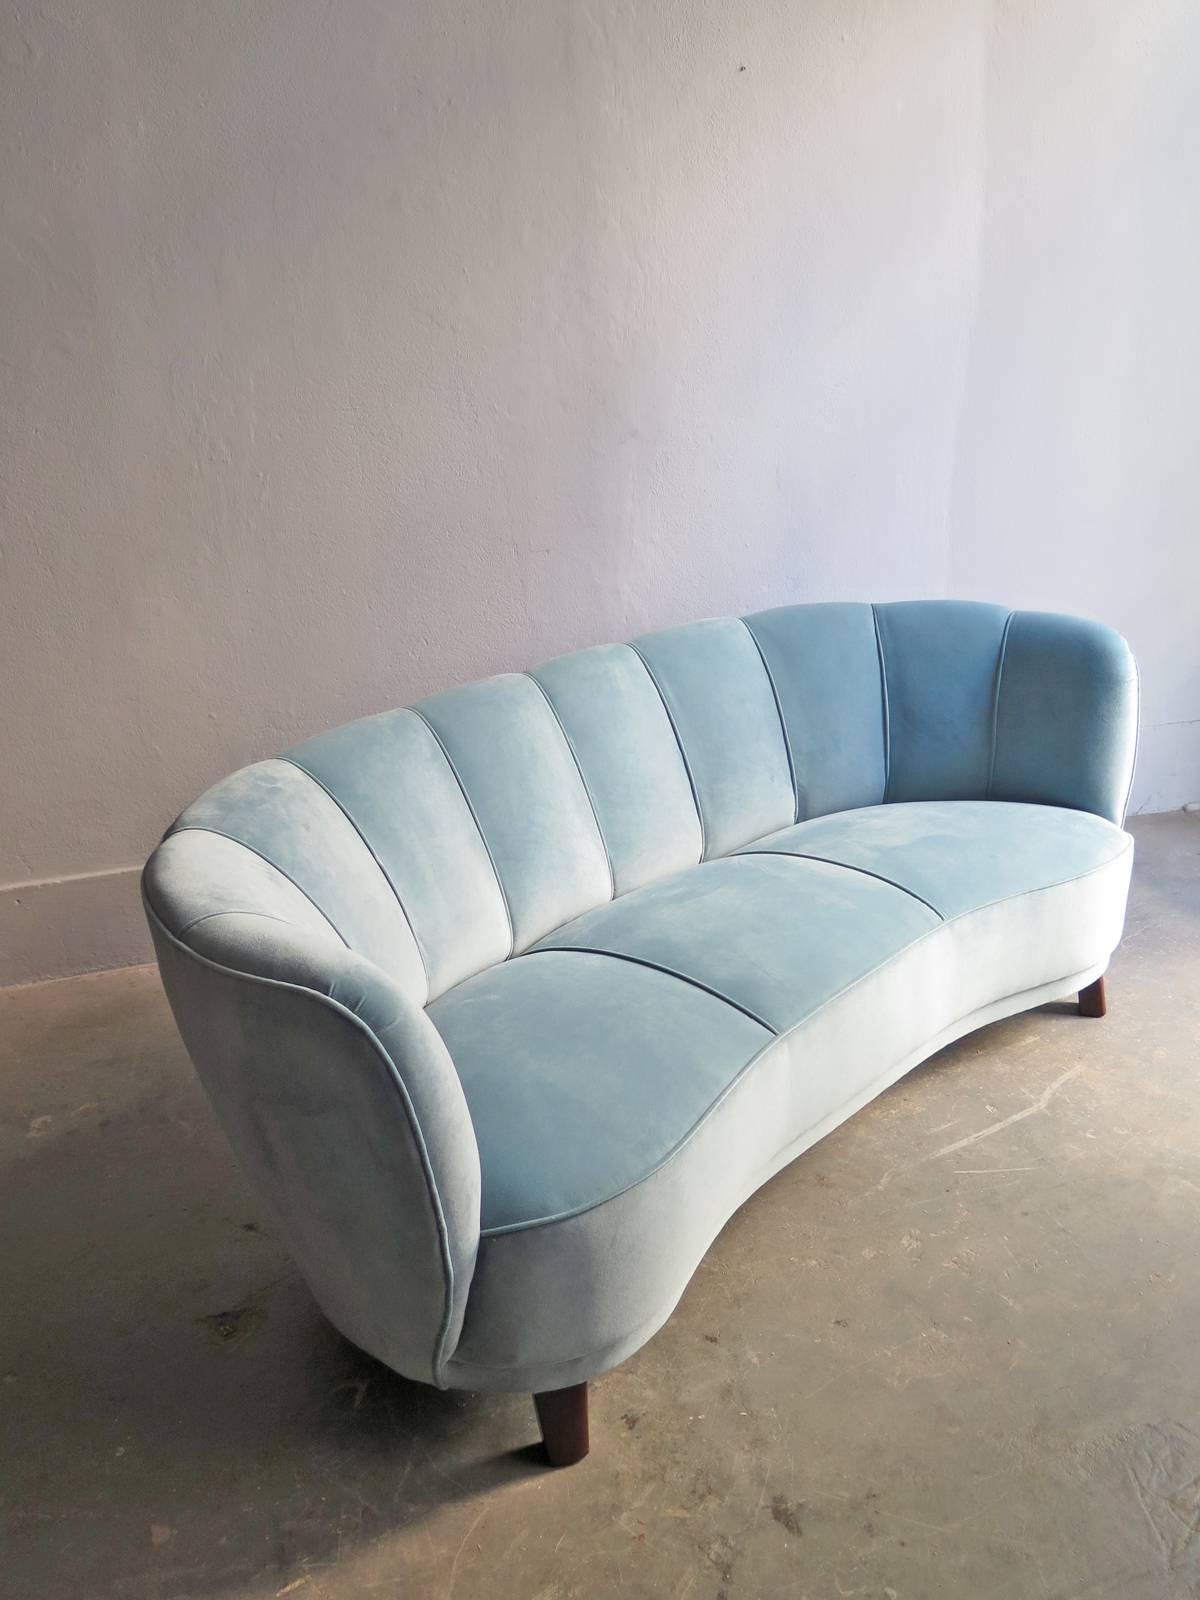 Art Deco blue velvet sofa re-upholstered in wooden legs.